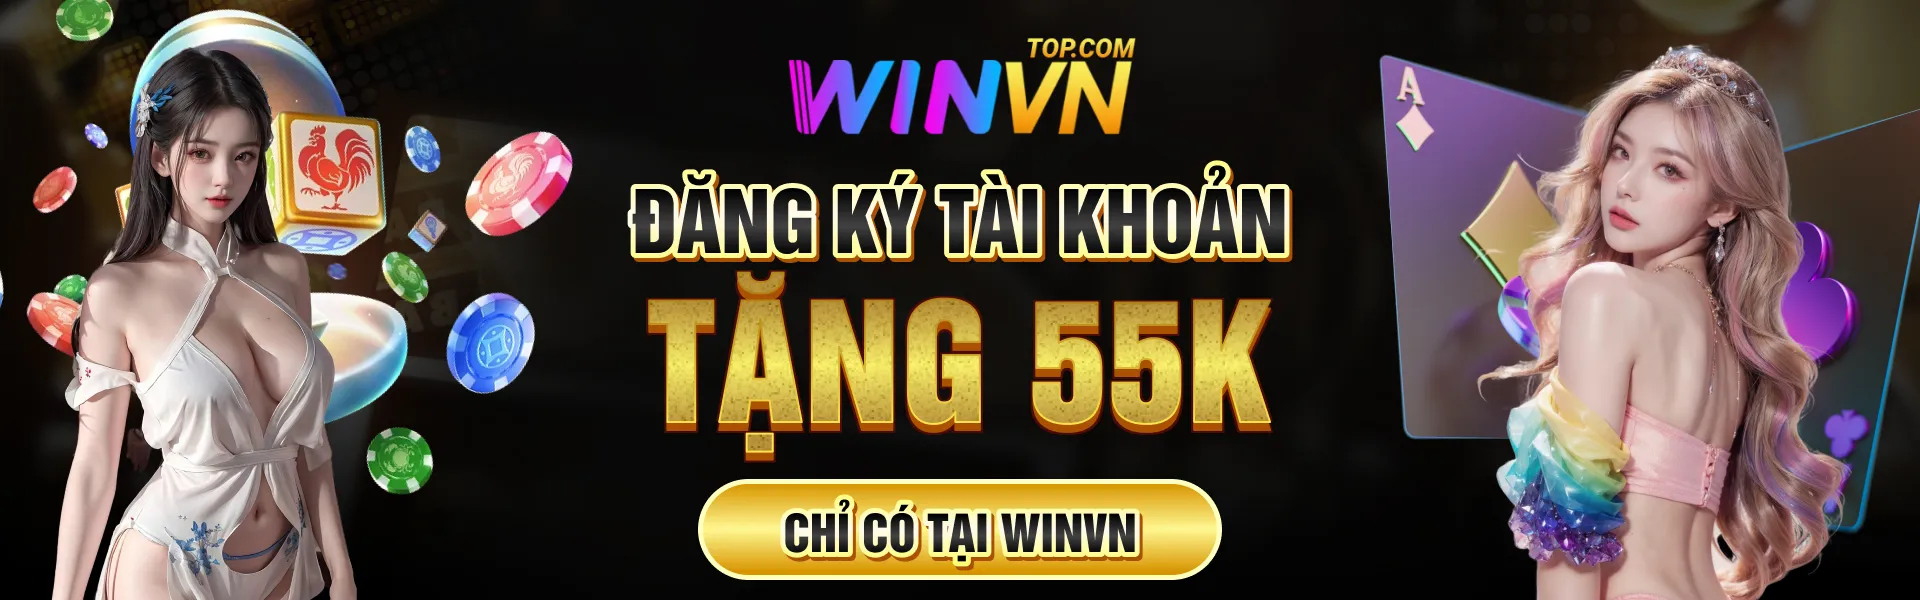 winvn-banner